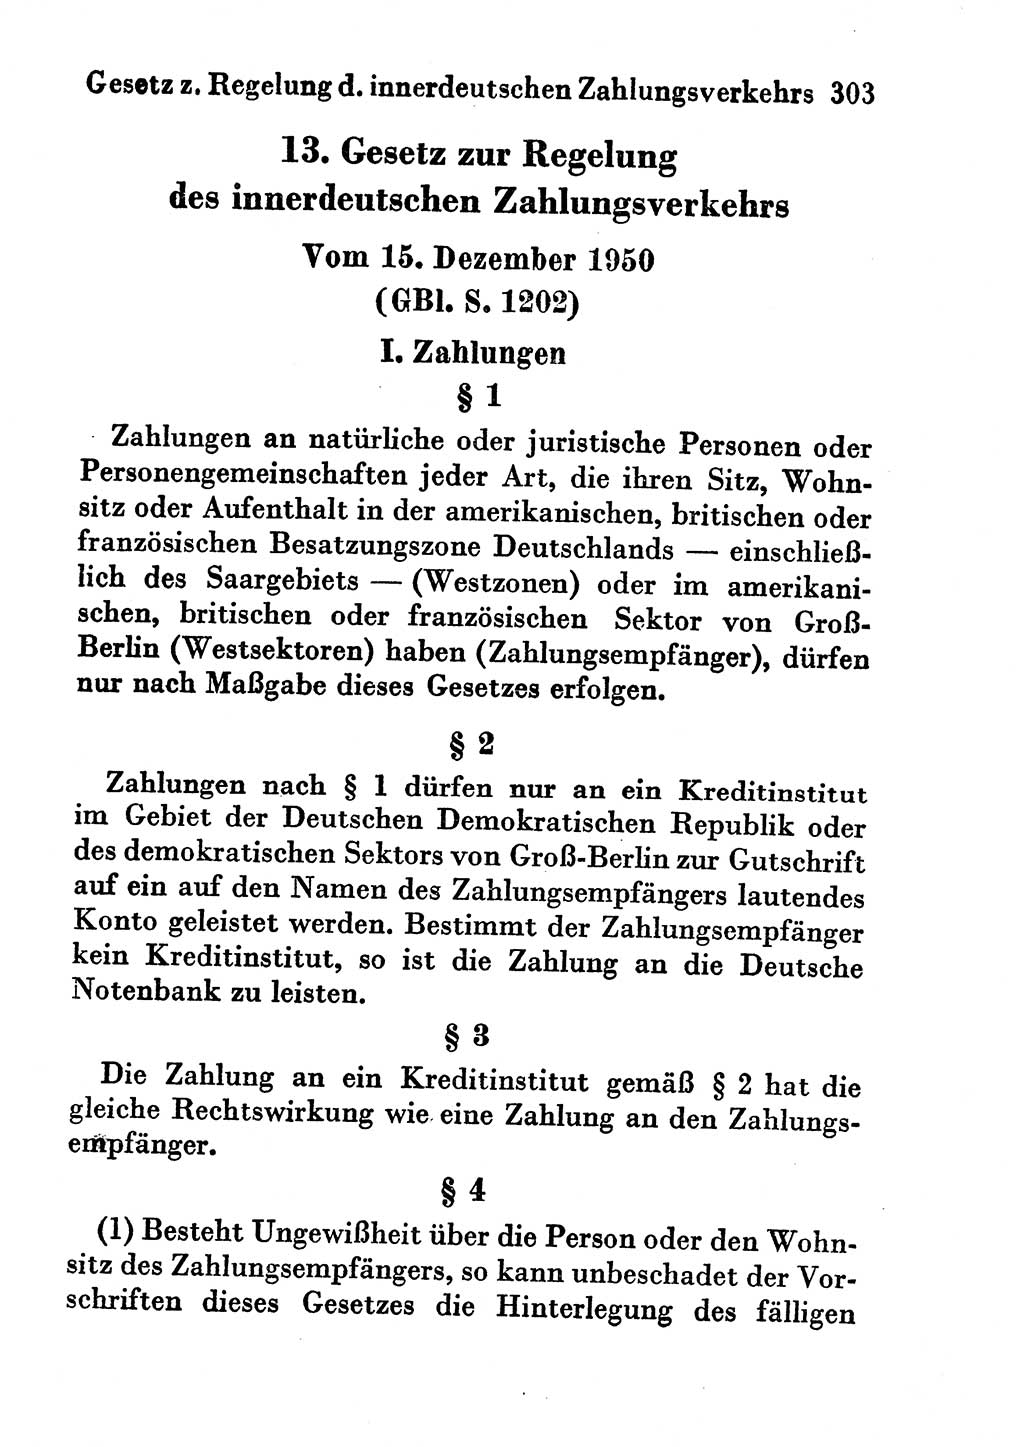 Strafgesetzbuch (StGB) und andere Strafgesetze [Deutsche Demokratische Republik (DDR)] 1956, Seite 303 (StGB Strafges. DDR 1956, S. 303)